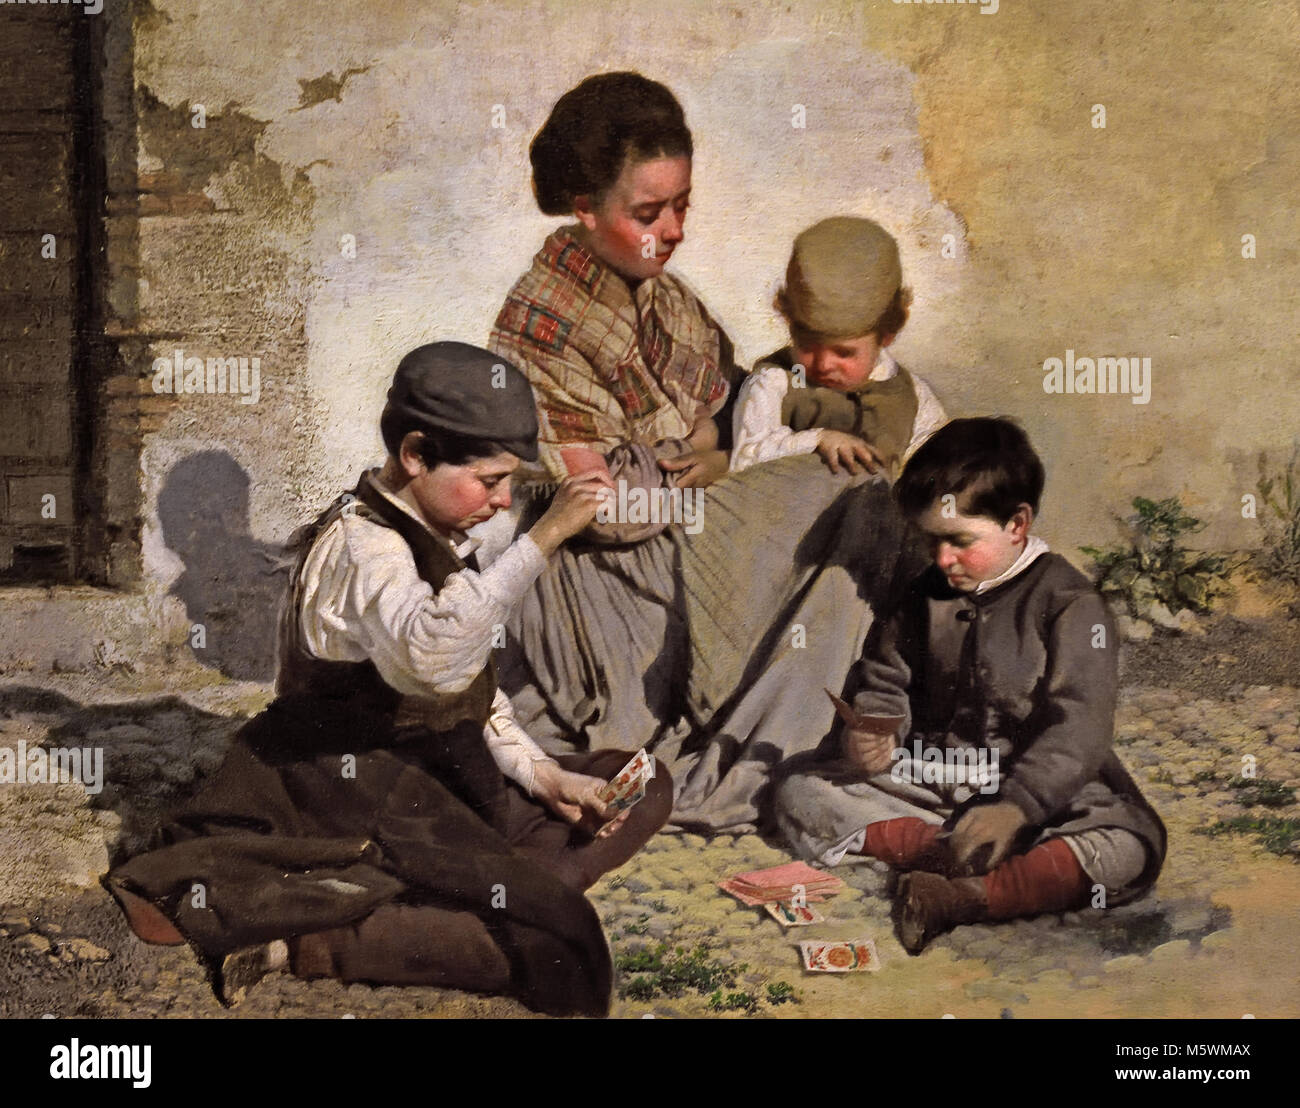 Kinder spielen mit Karten 1876/1877 Rafael Romero Barros 1832 - 1895 aus dem 19. Jahrhundert, Spanien, Spanisch, Costumbrismo Stil Stockfoto